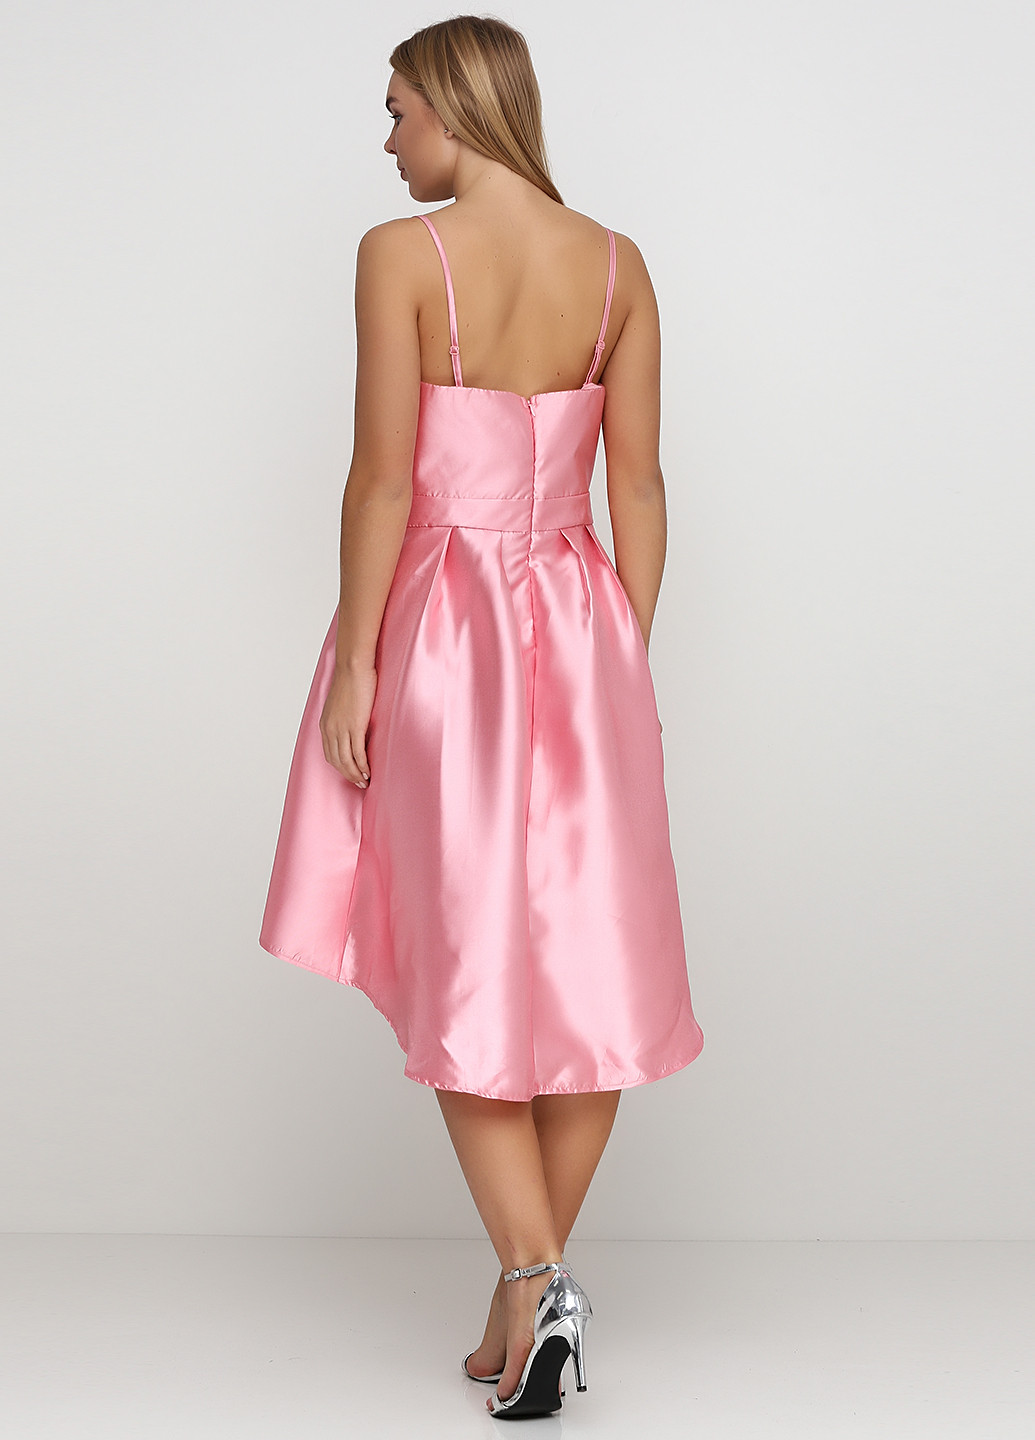 Розовое вечернее платье Vero Moda однотонное